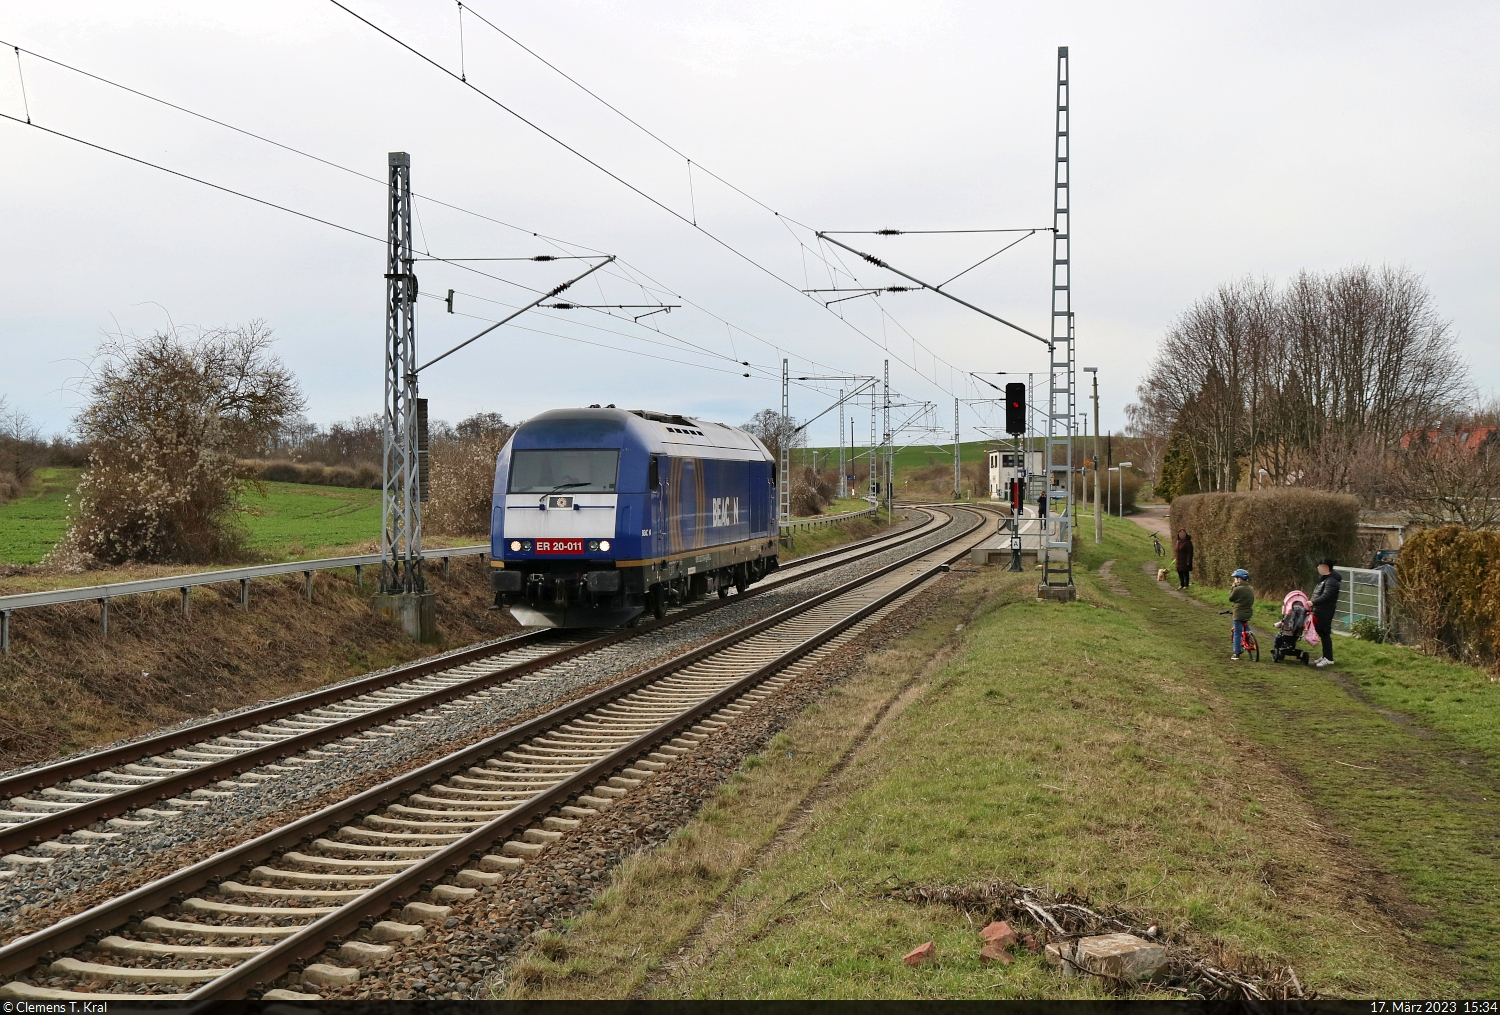 Da schaut die ganze Familie: 223 011-8 (Siemens ER20-011) auf Solofahrt durch den Hp Zscherben Richtung Halle Rosengarten.

🧰 Beacon Rail Leasing Limited (BRLL), vermietet an Flex Bahndienstleistungen GmbH
🕓 17.3.2023 | 15:34 Uhr